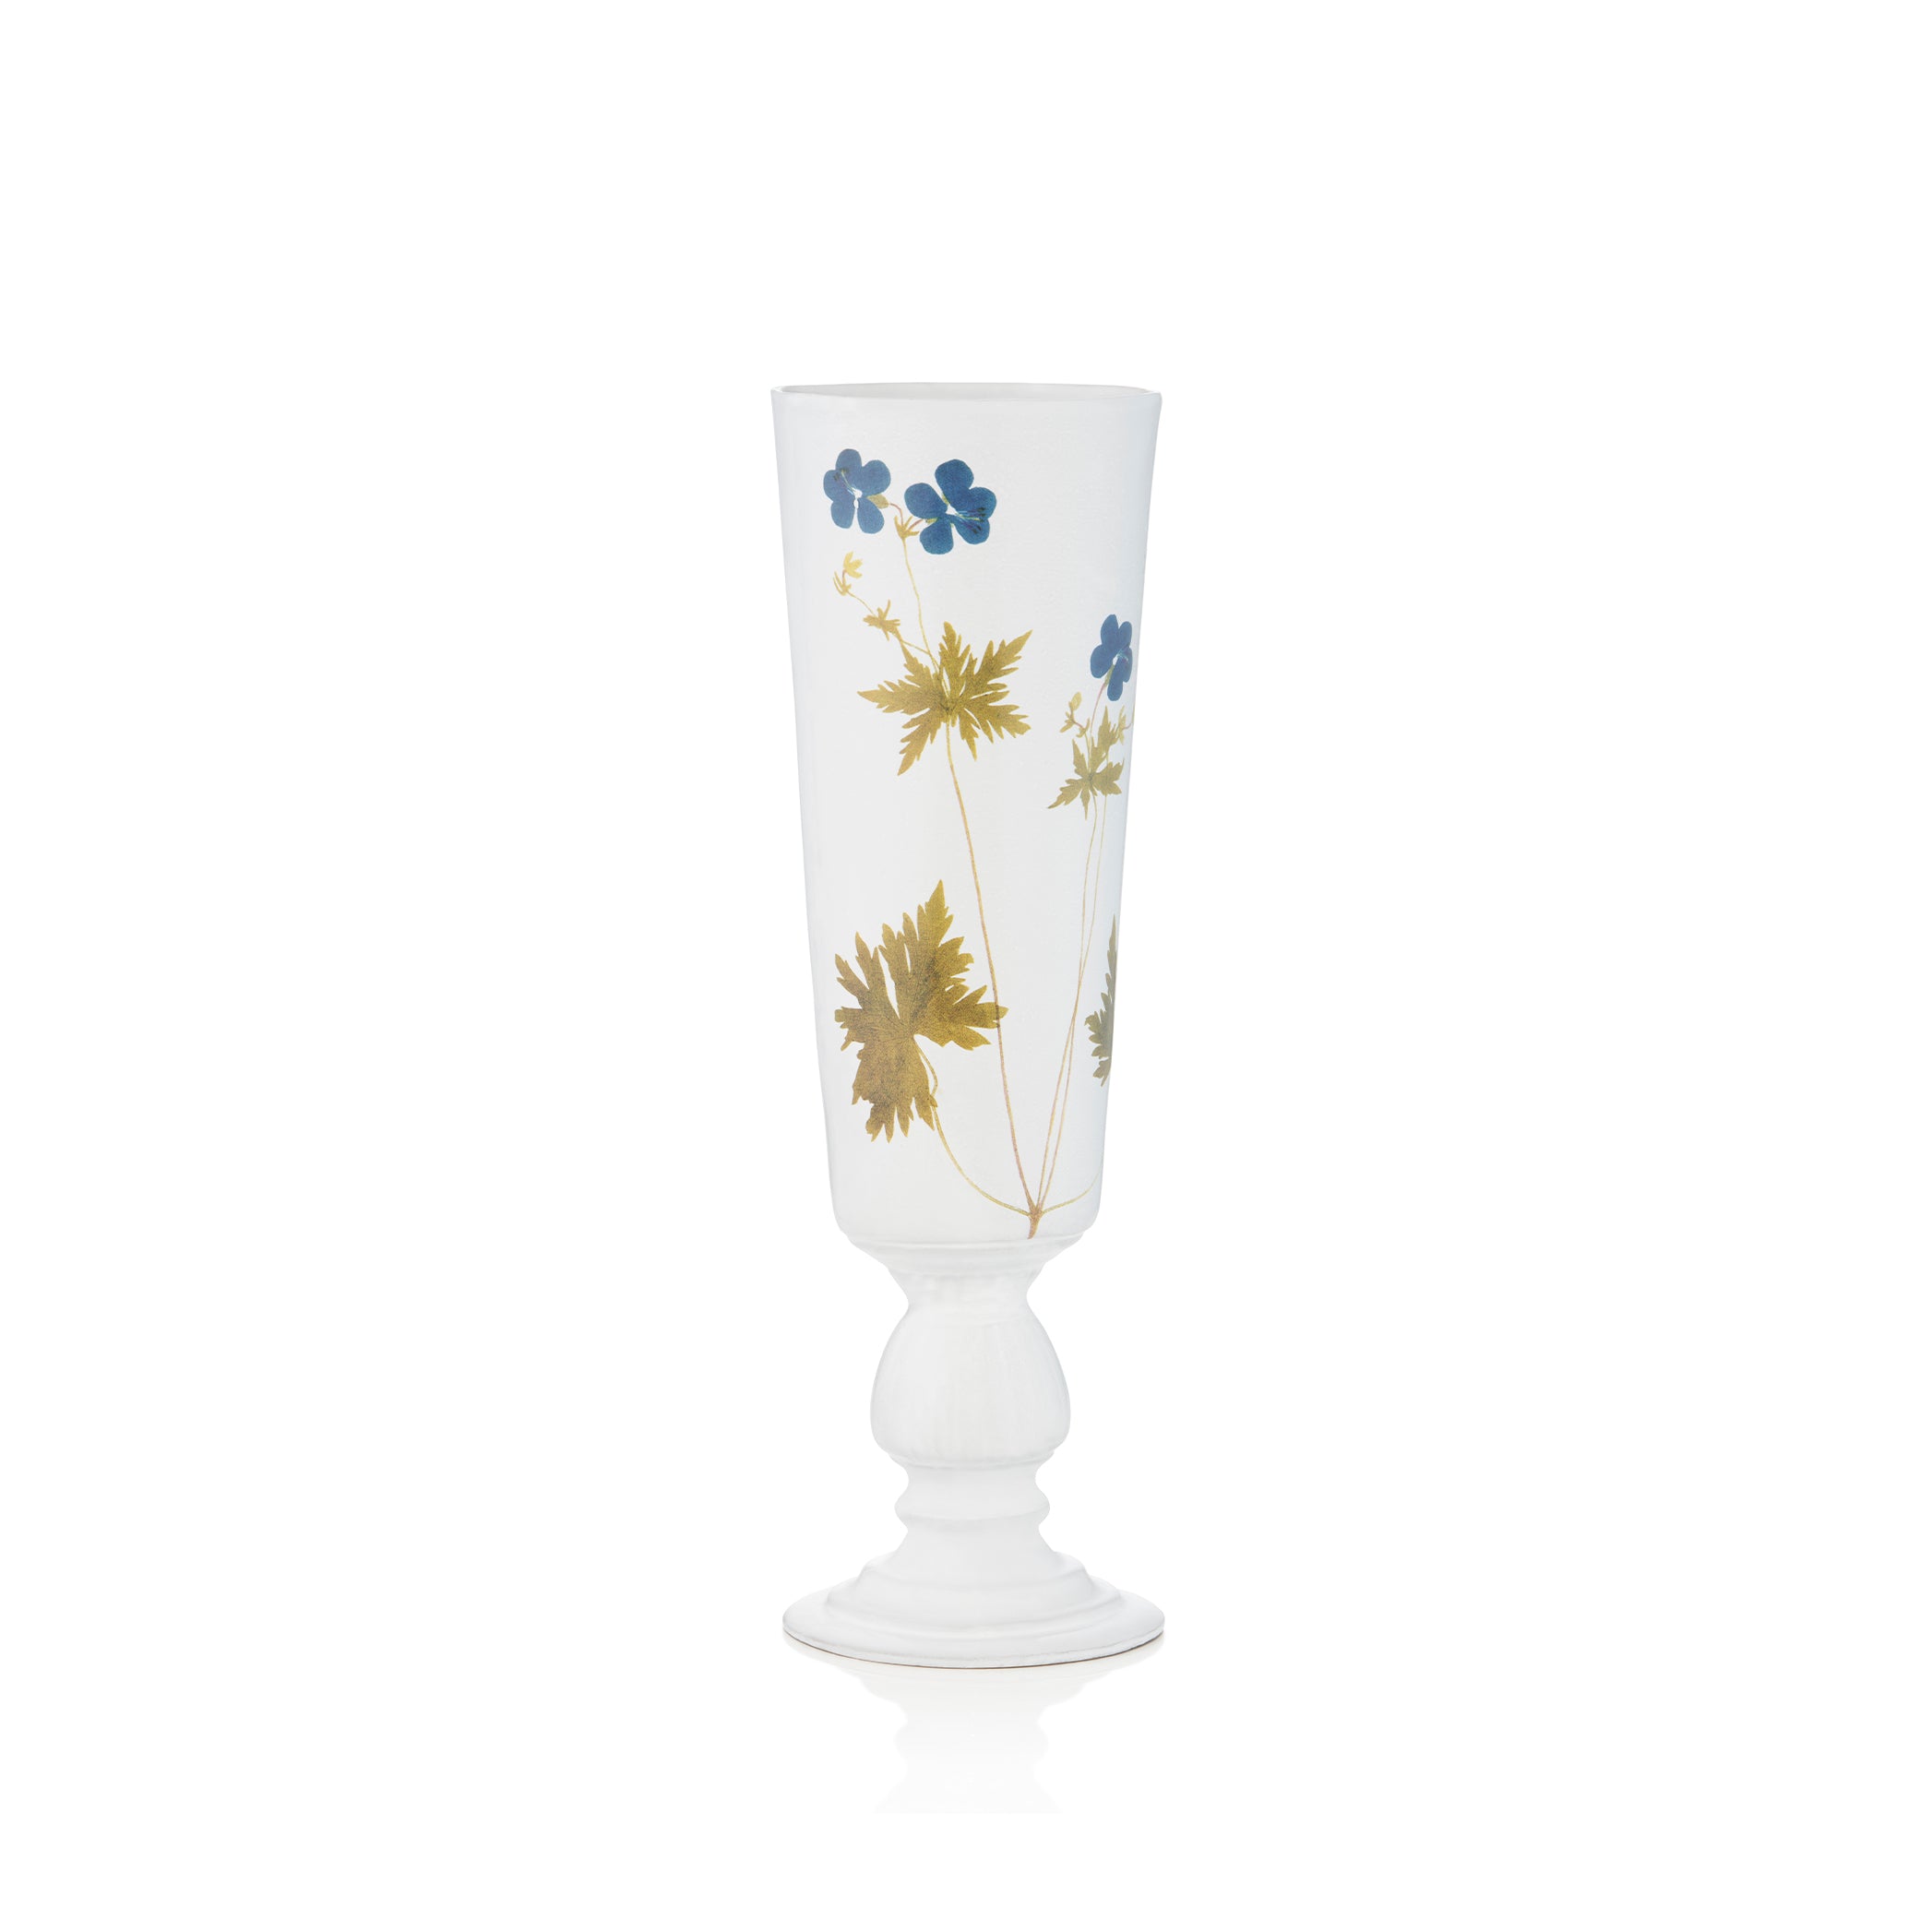 Blue Geranium Flowers Vase by Astier de Villatte, 36cm